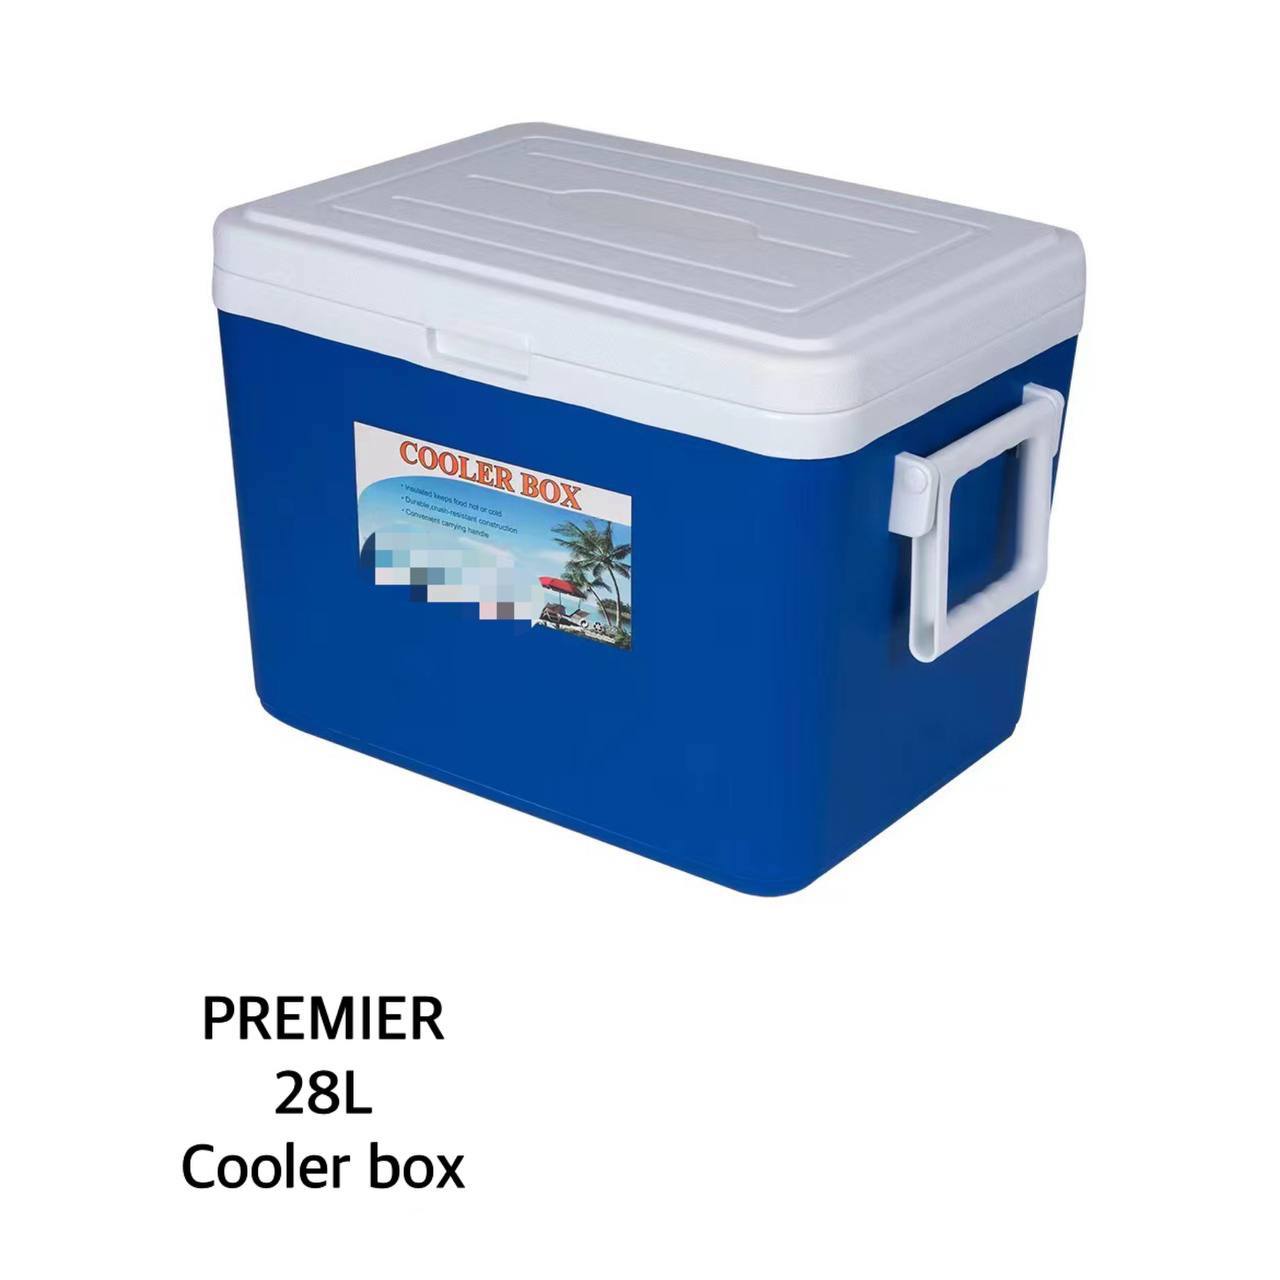 PREMIER 28L Cooler box